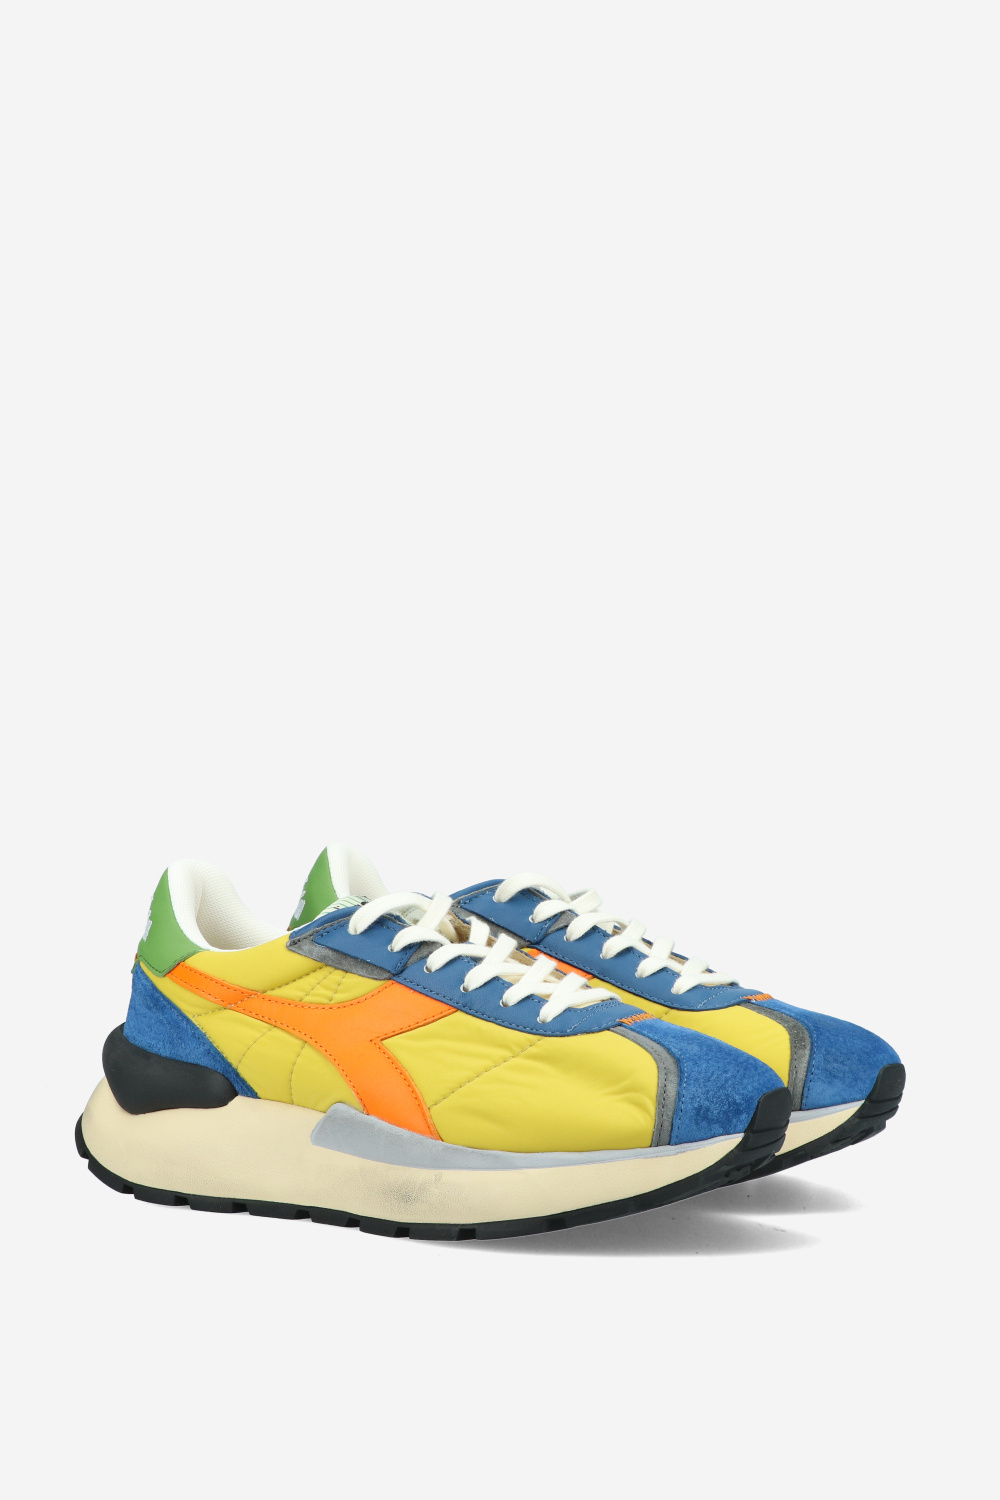 Diadora Sneakers Bright colors